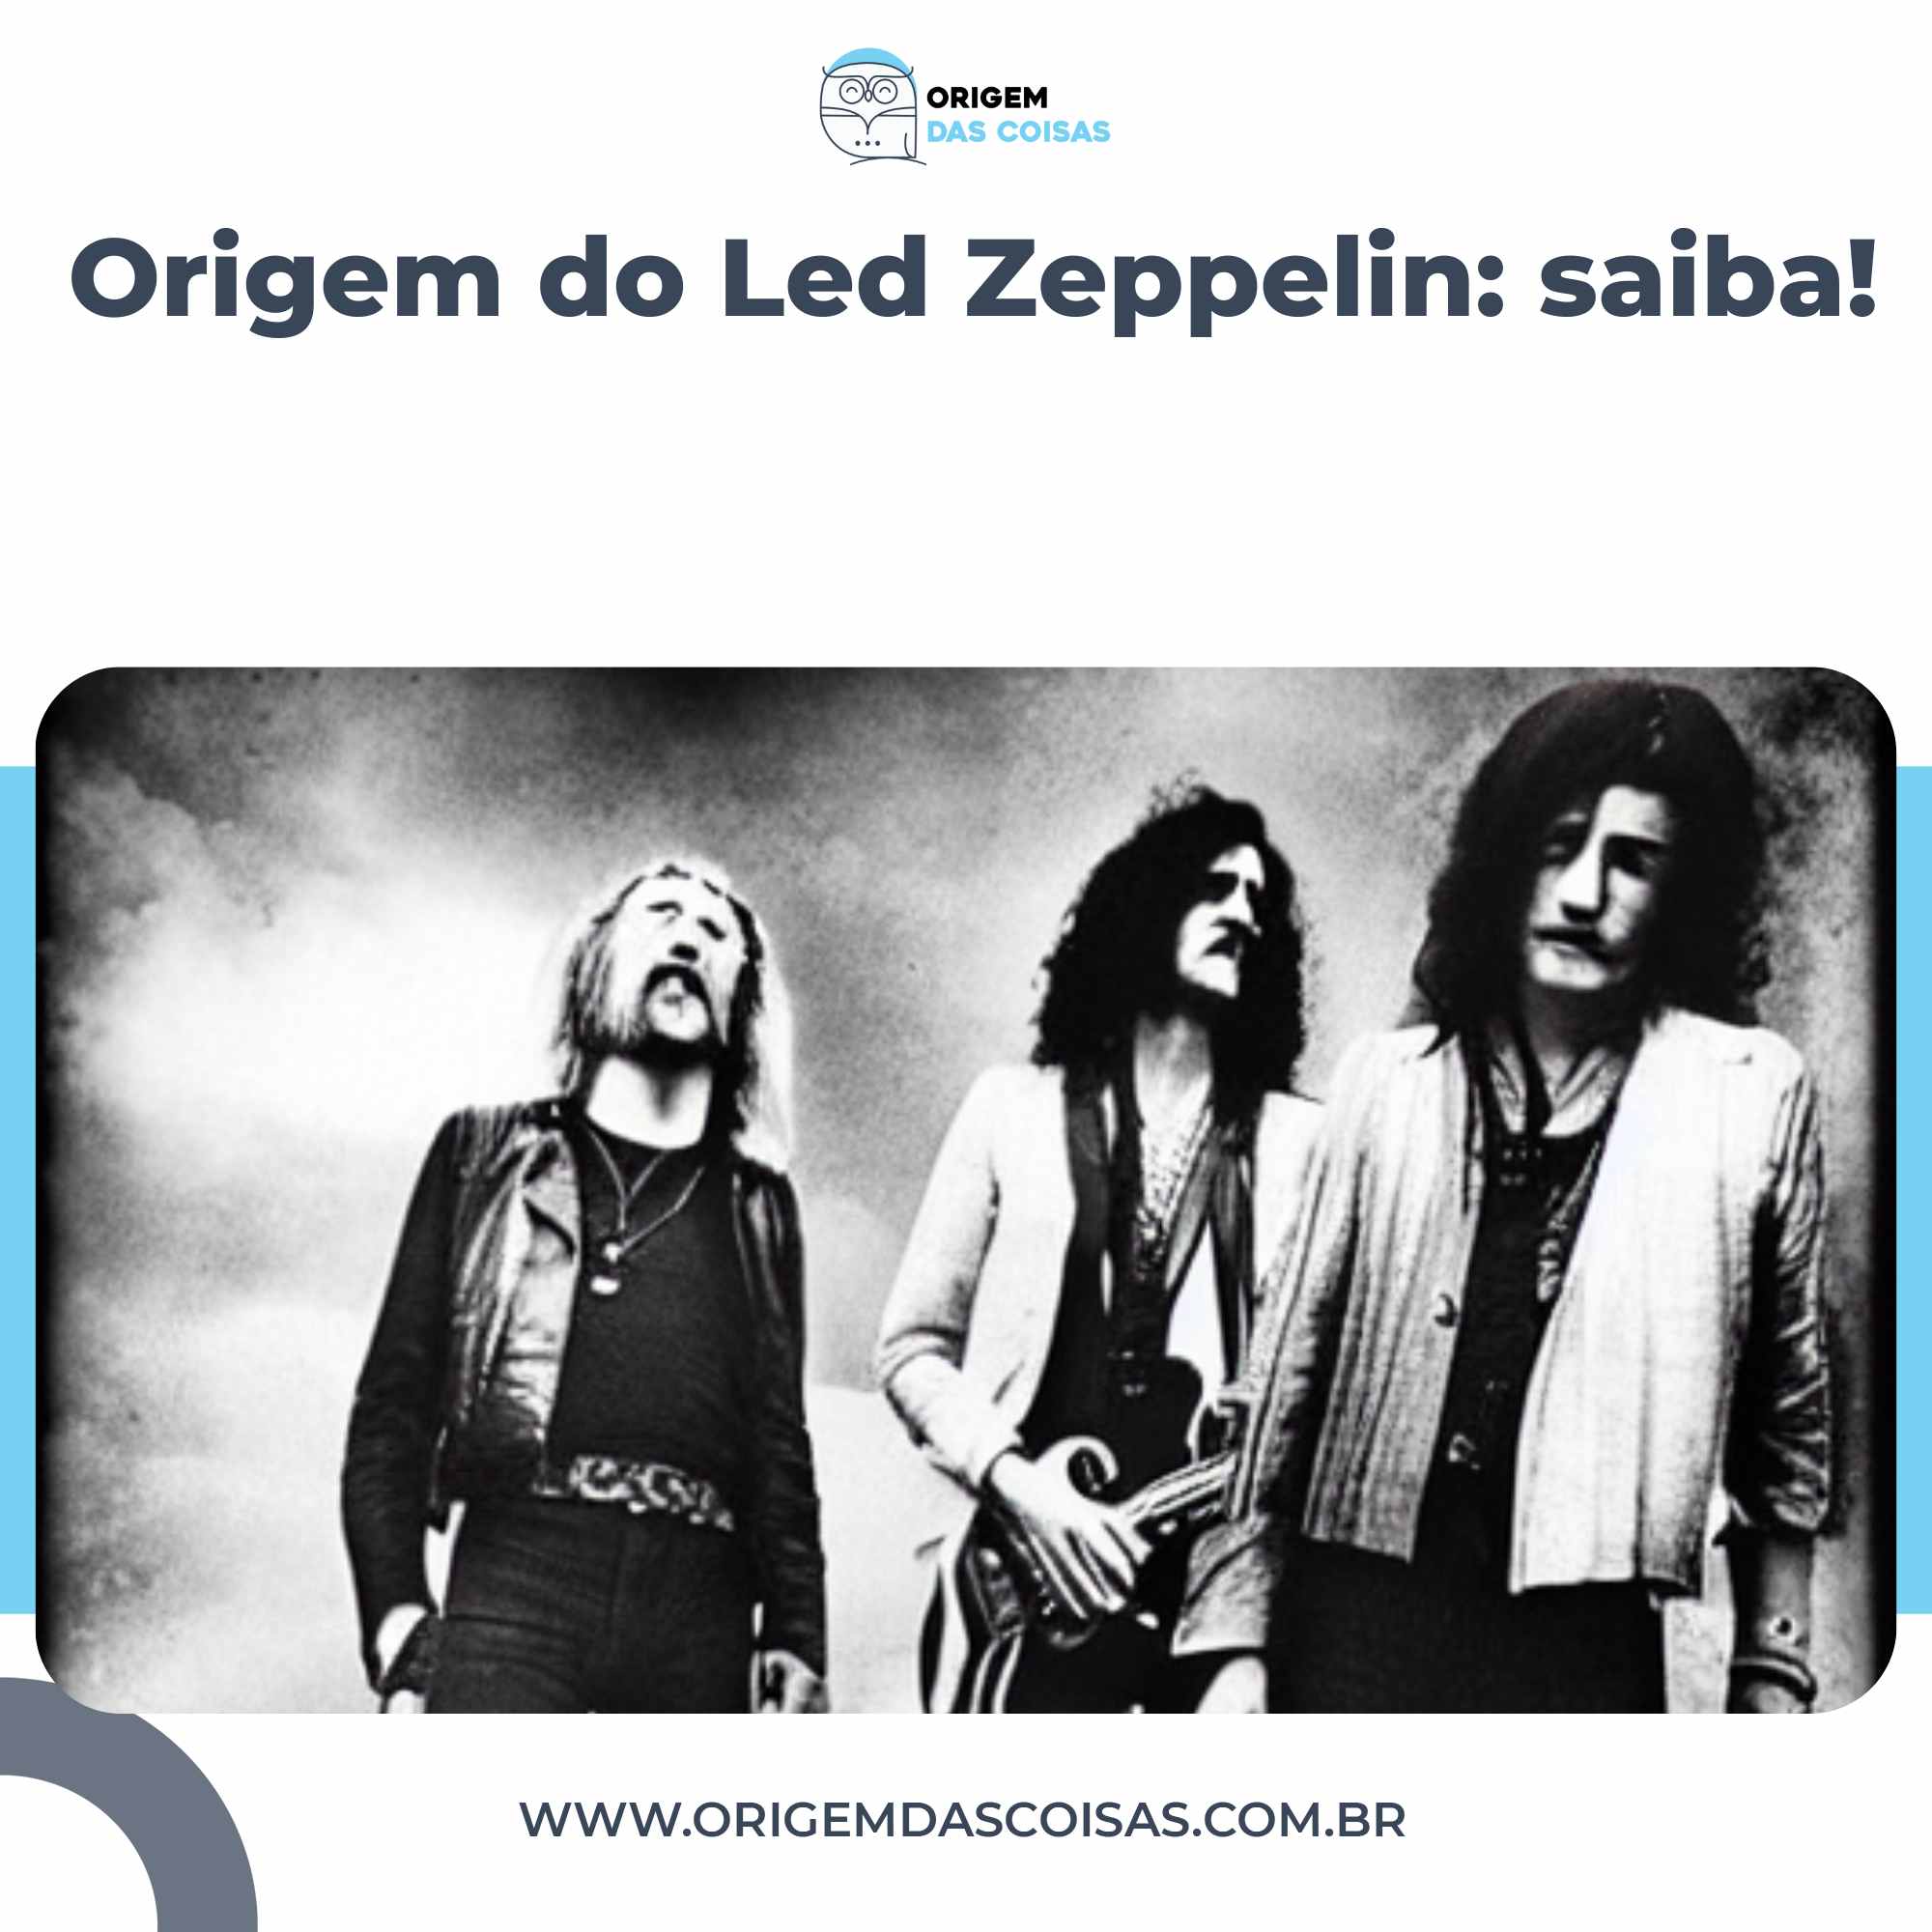 Origem do Led Zeppelin saiba!